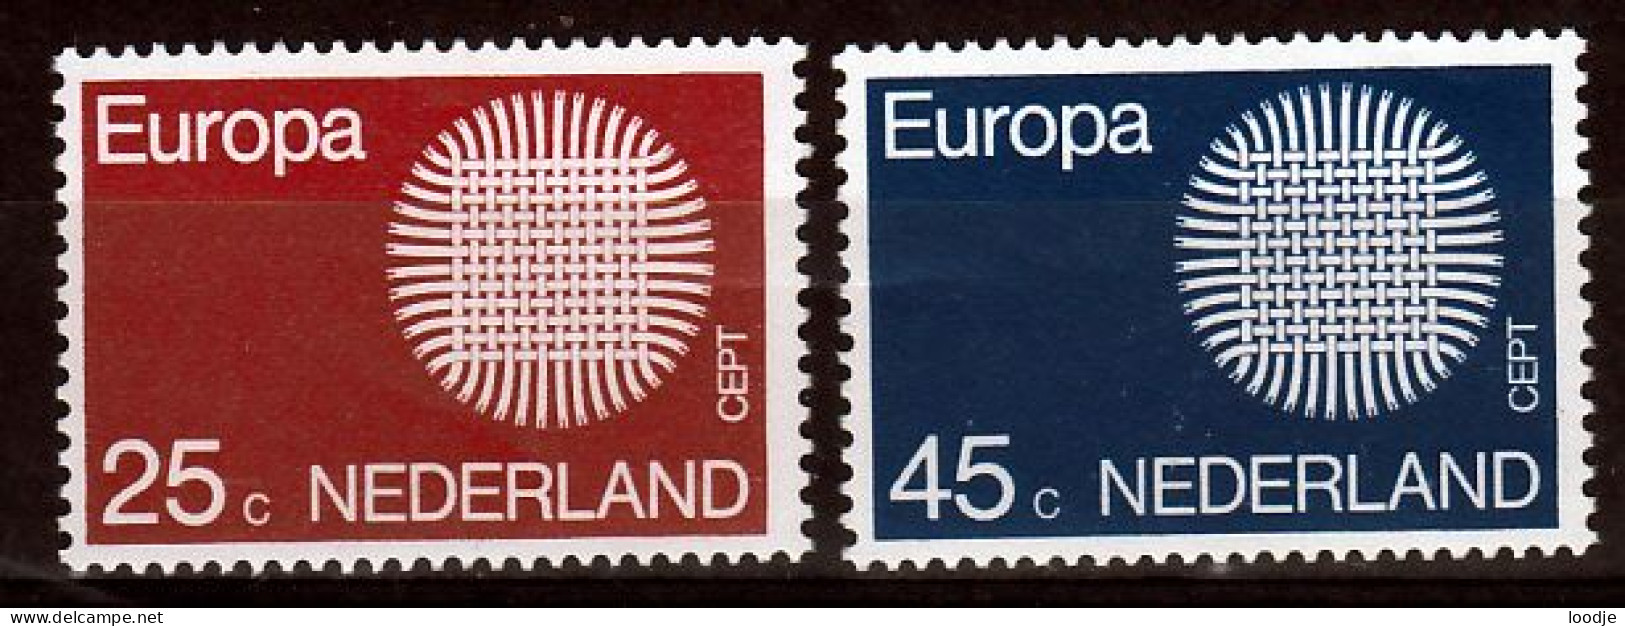 Nederland Europa Cept 1970 Postfris - 1970